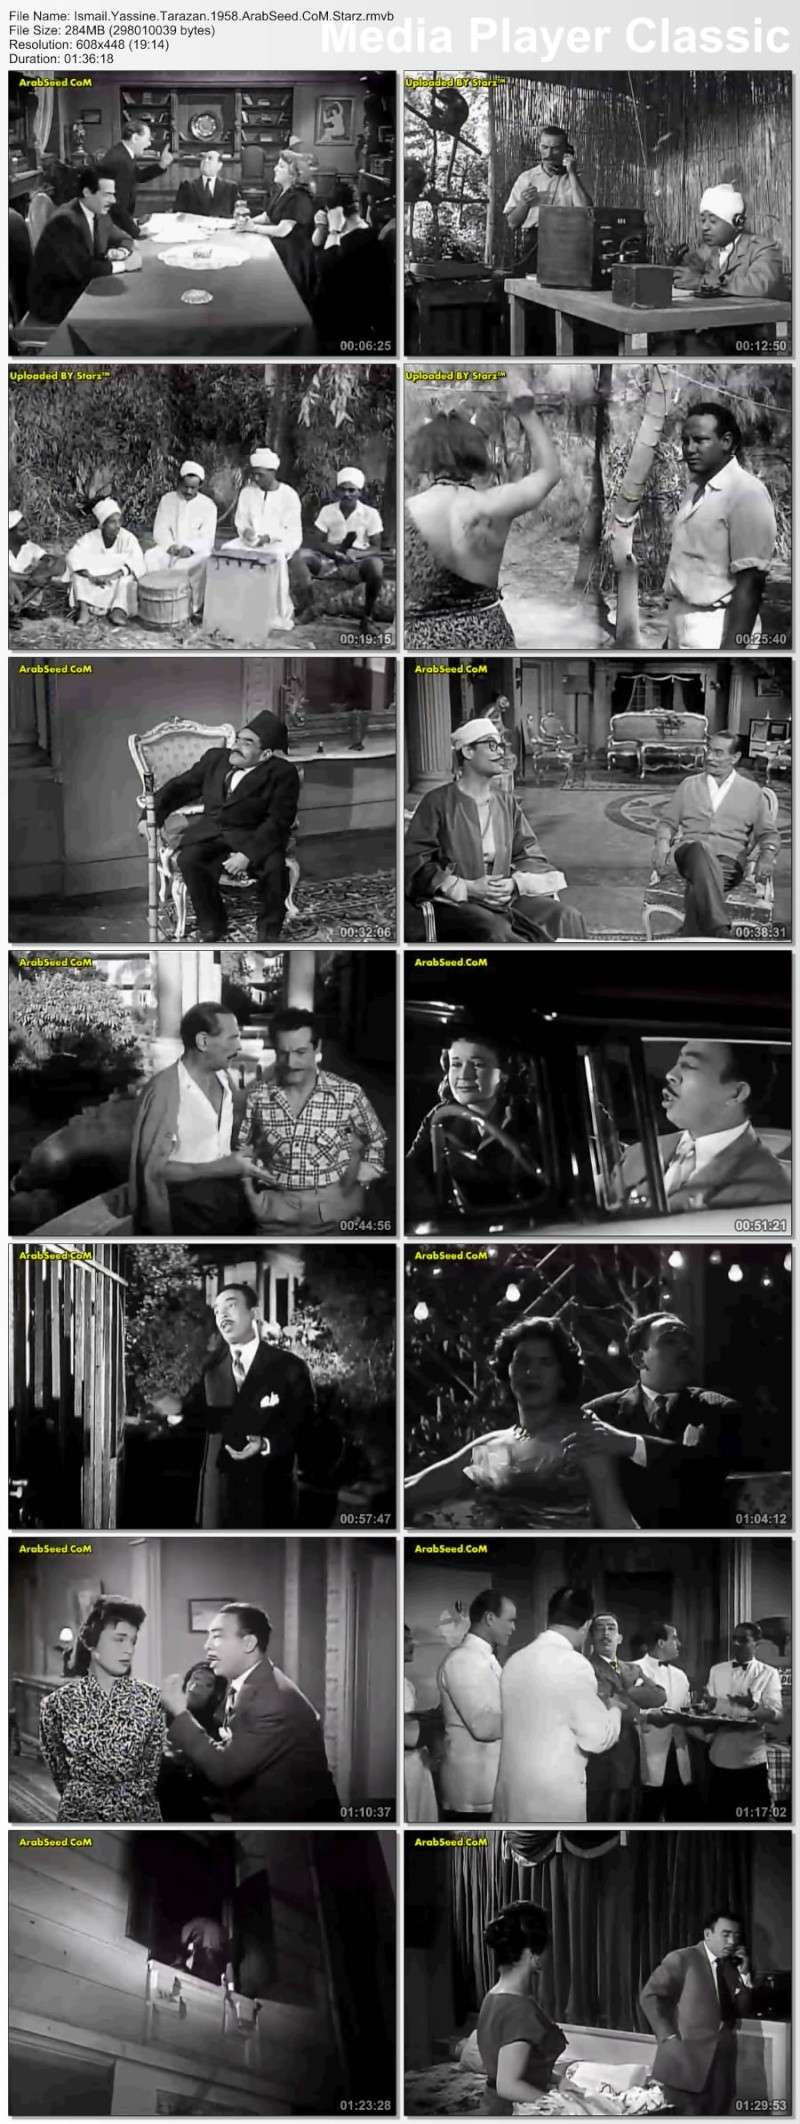 الفيلم العربي : اسماعيل يس طرزان 1958 :: نسخة DVDRip تحميل مباشر على اكثر من سيرفر منتدي كريبتون Thumb137